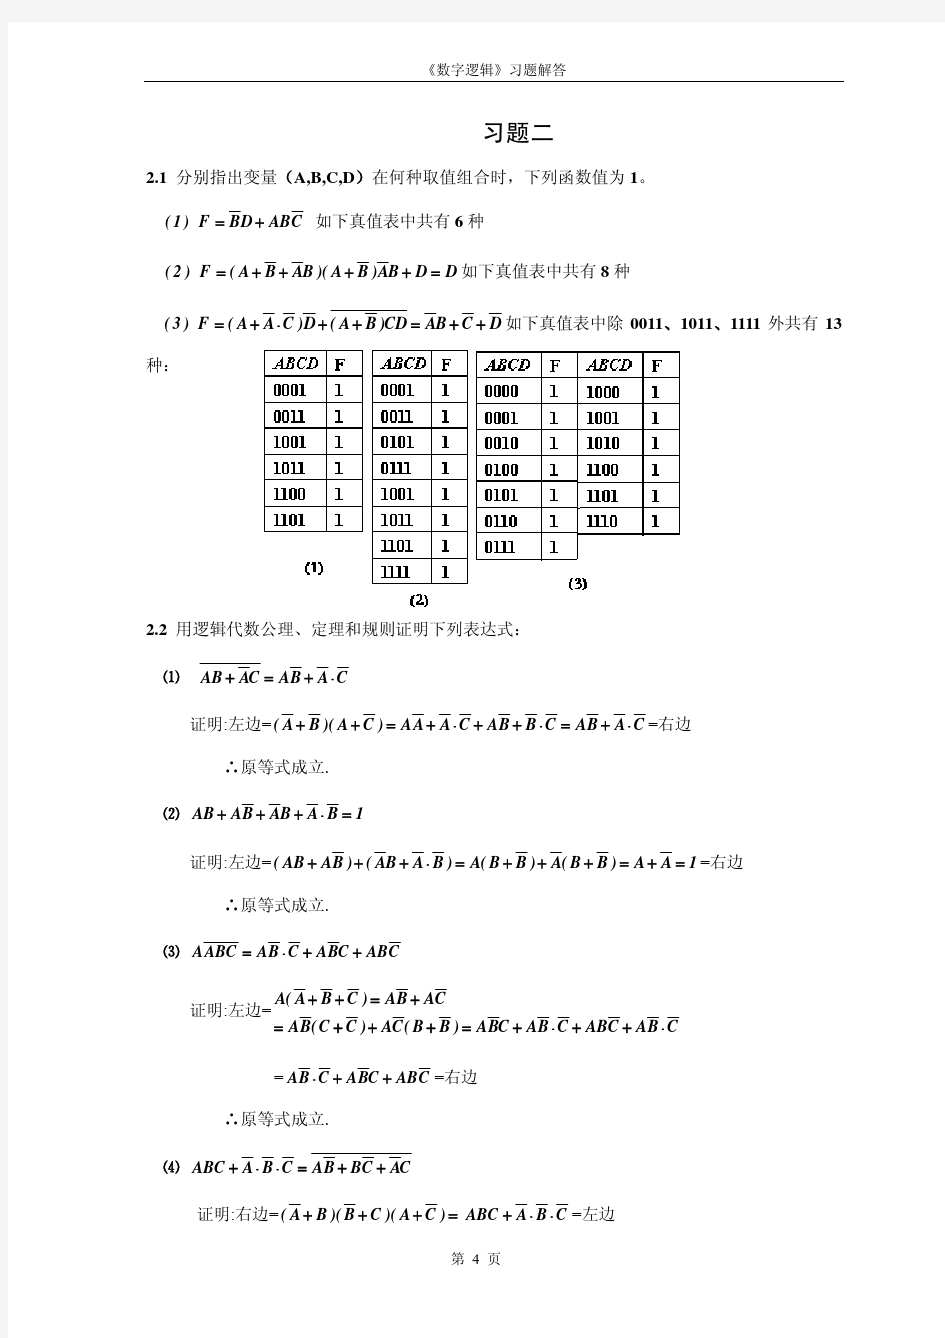 《数字逻辑》第四版部分习题答案_khdaw